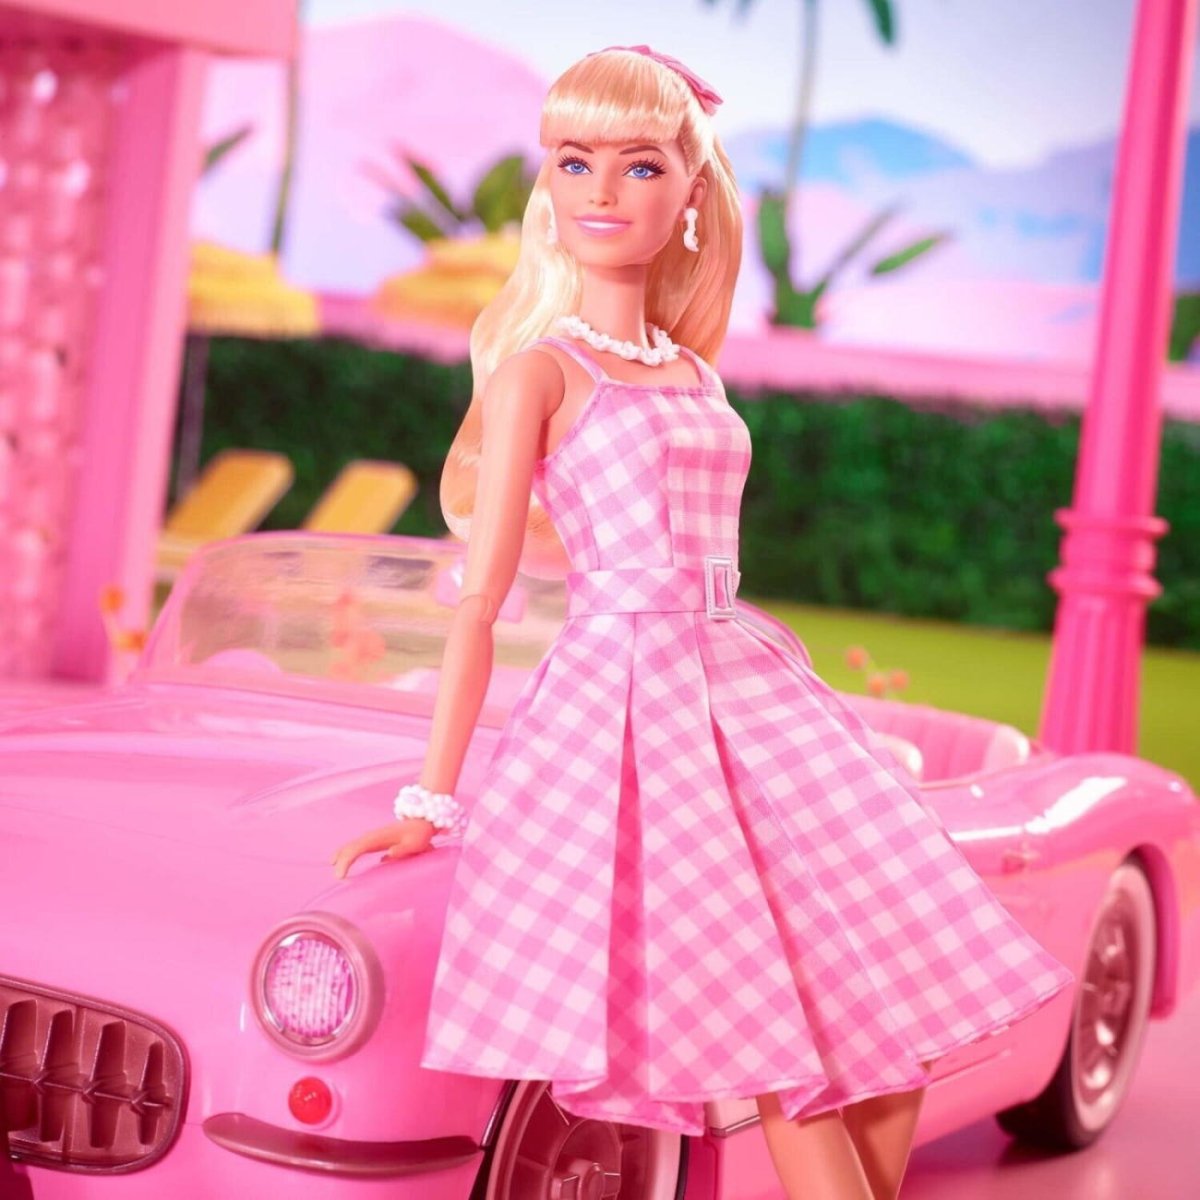 映画 「バービー」 ギンガムドレス ドール マーゴット・ロビー Barbie